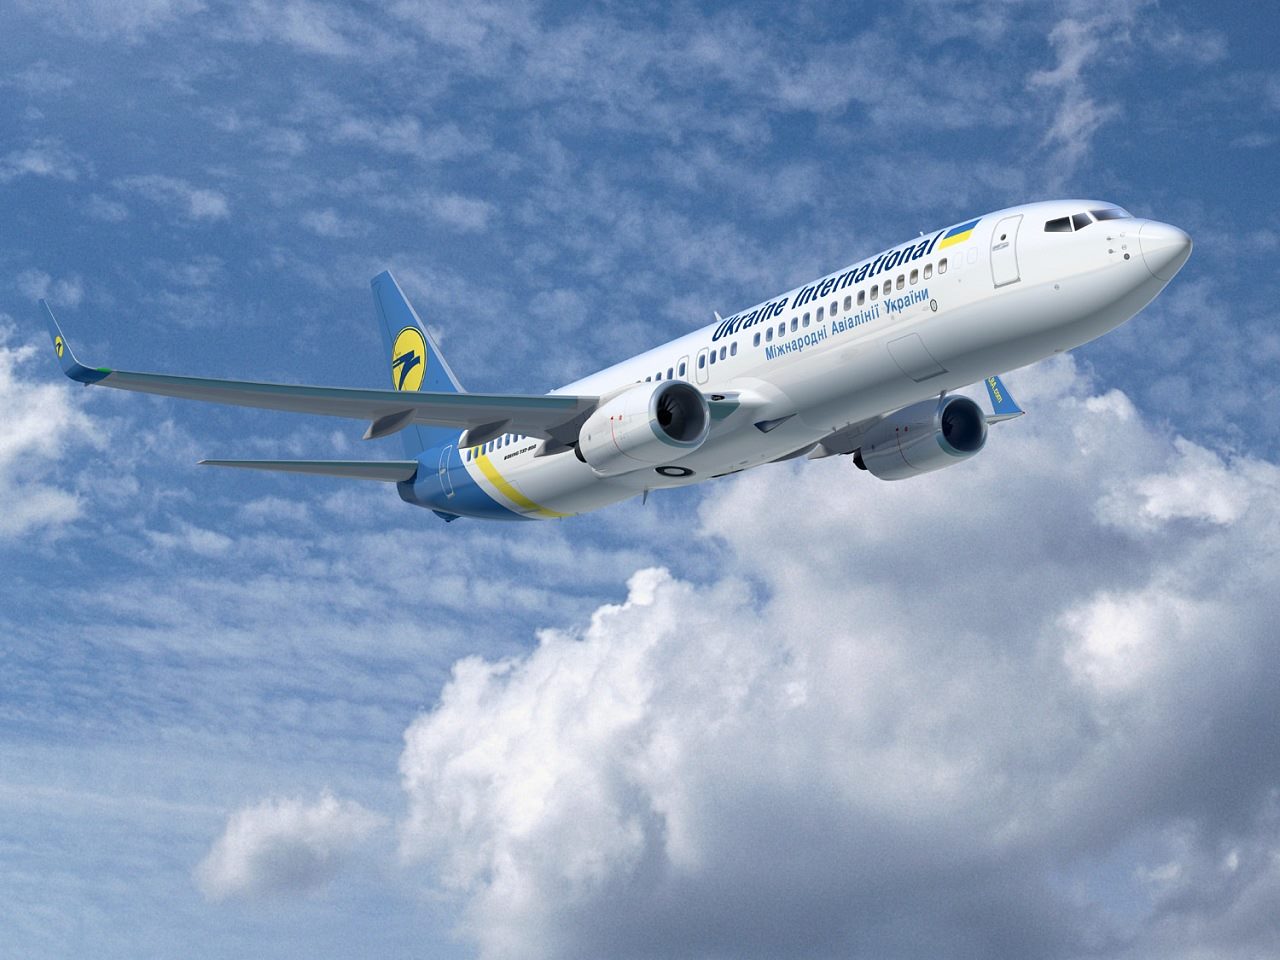 Ukraine International Airlines plane crashed in Iran